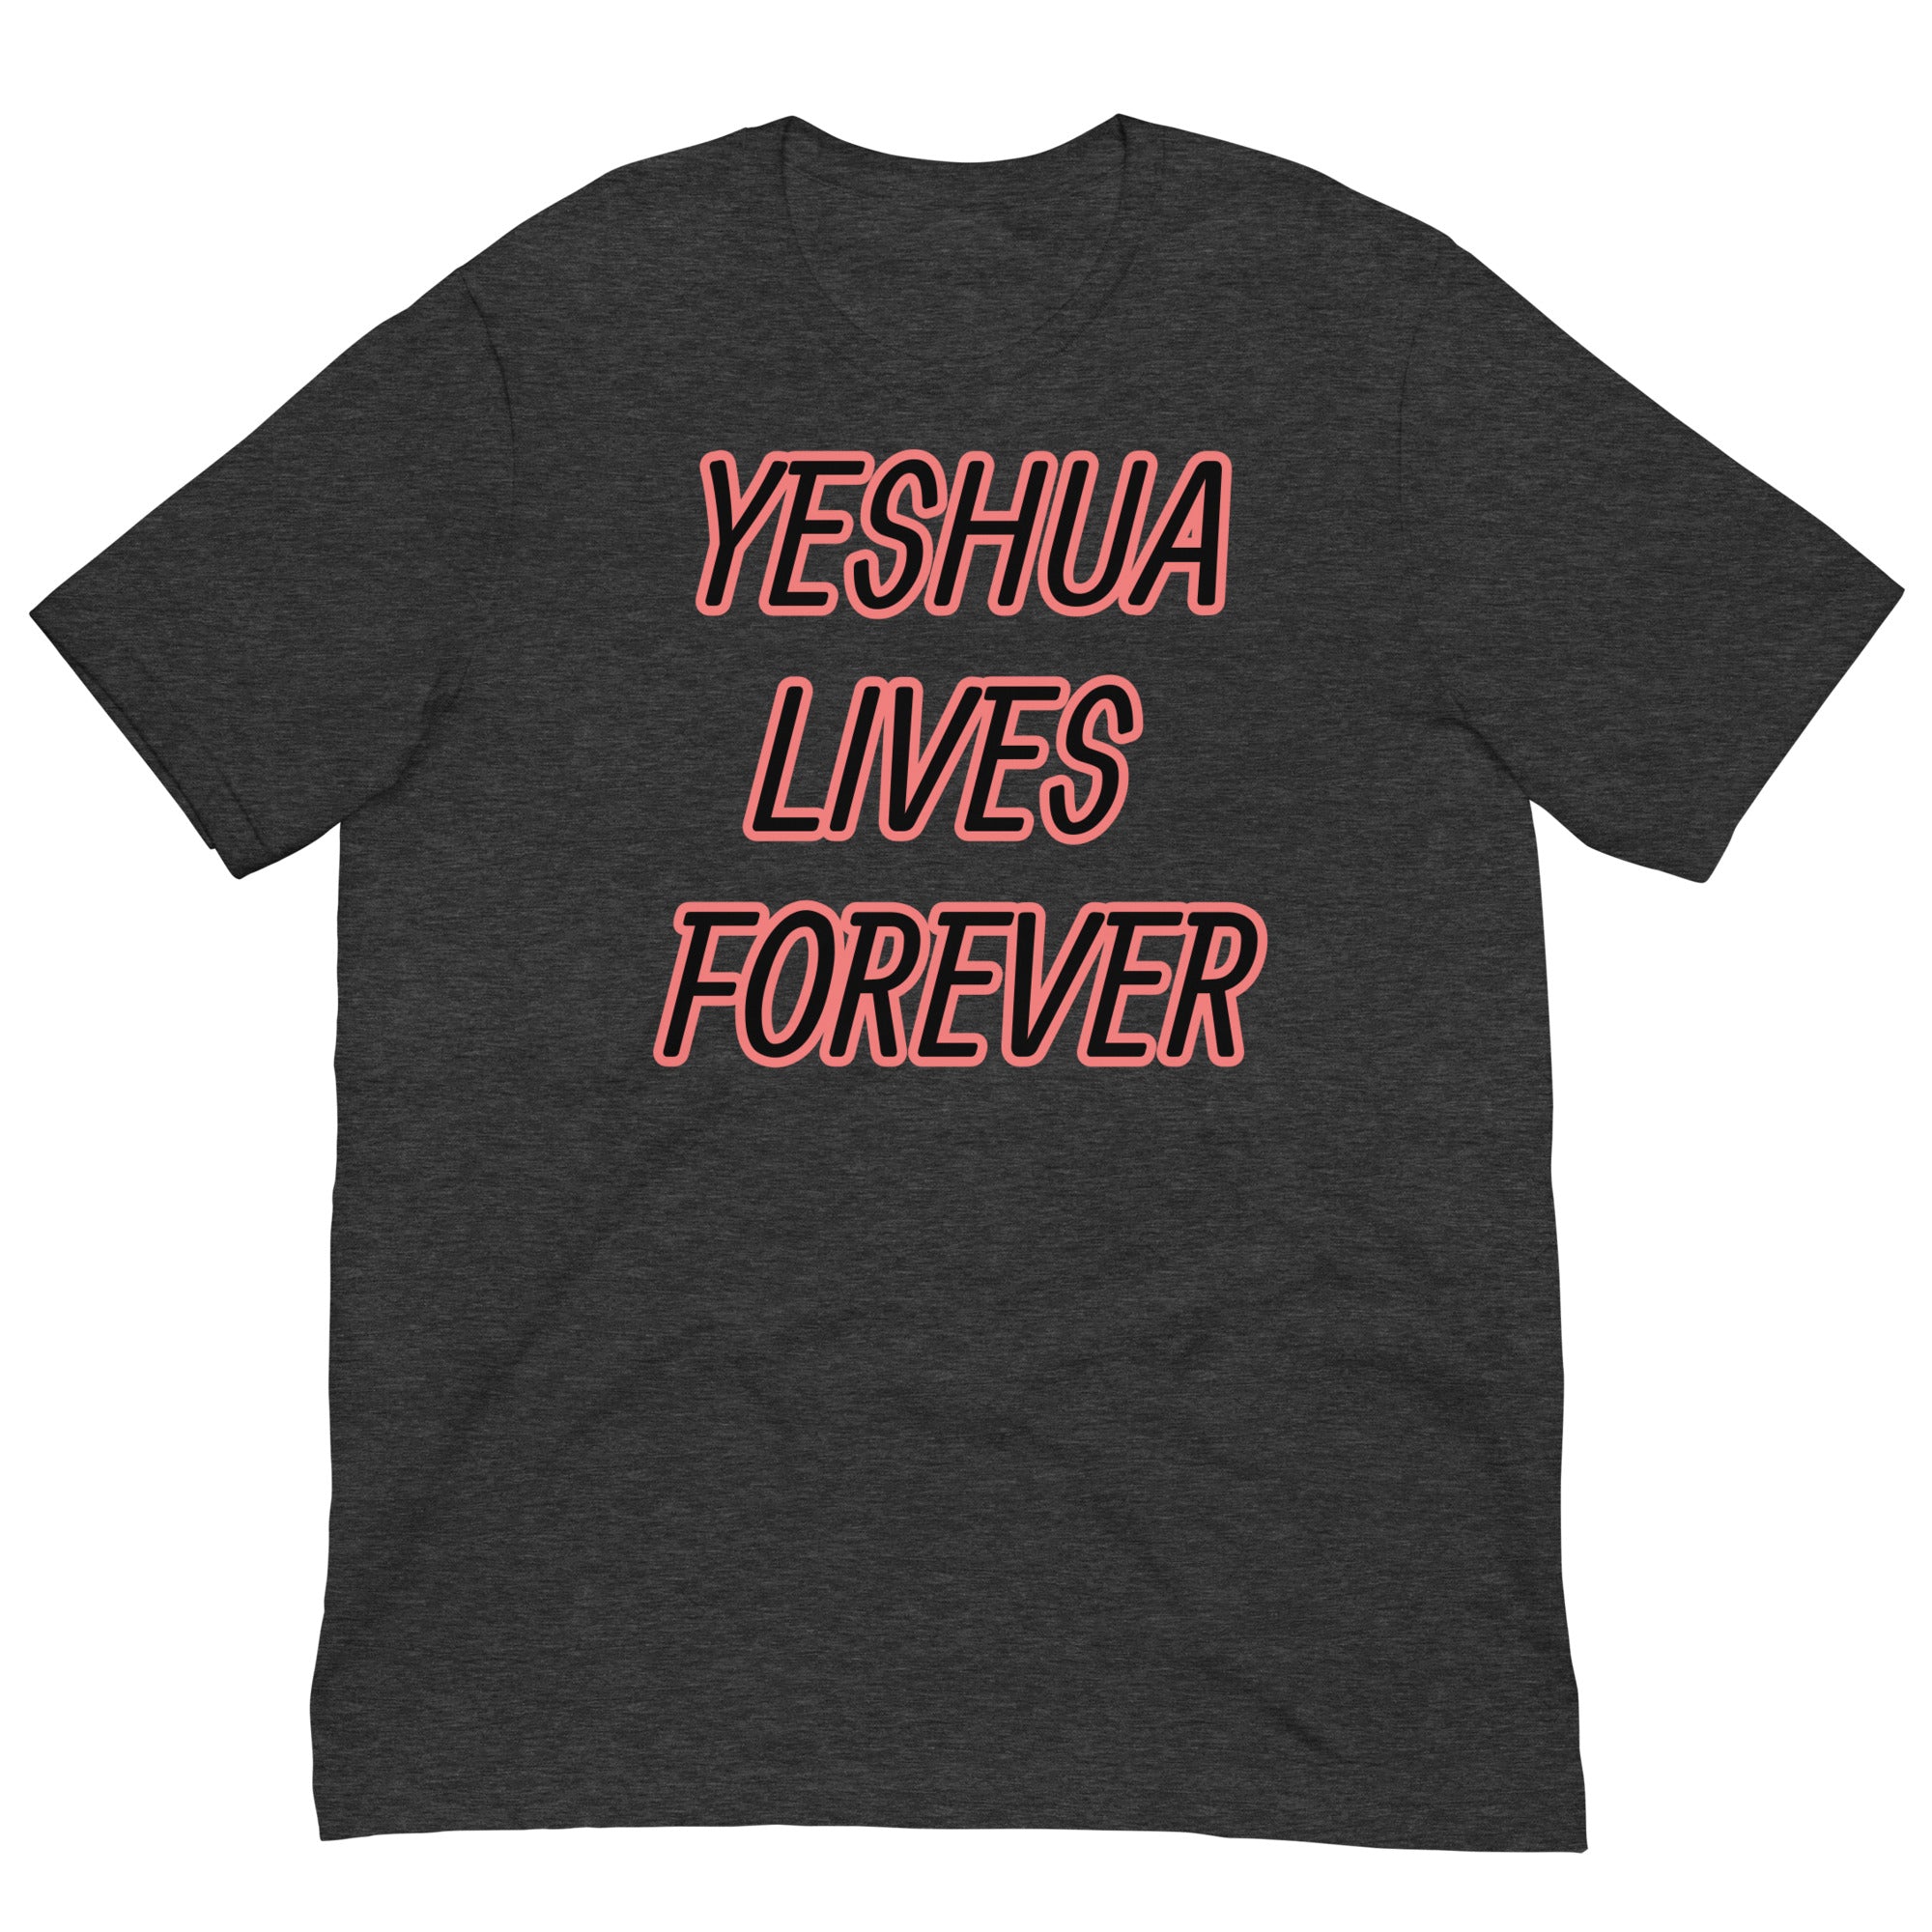 Yeshua lives forever Unisex t-shirt